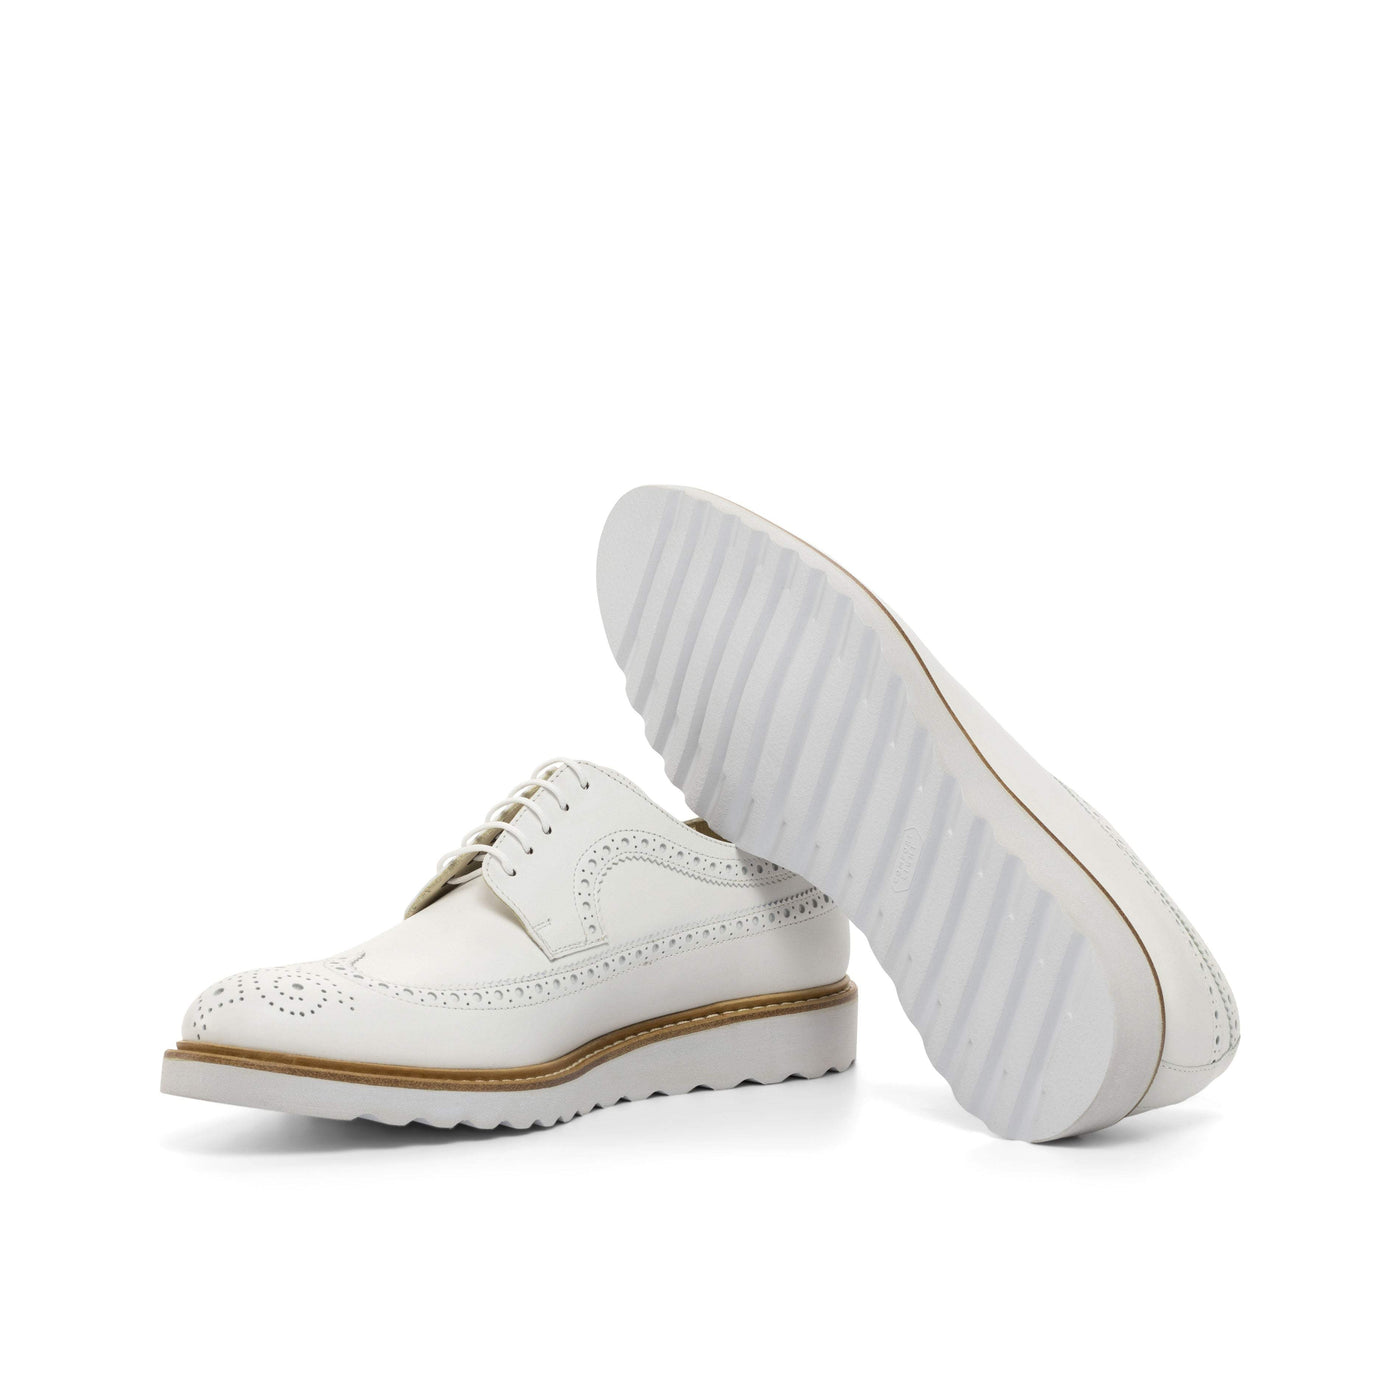 Men's Longwing Blucher Shoes Leather White 4731 2- MERRIMIUM